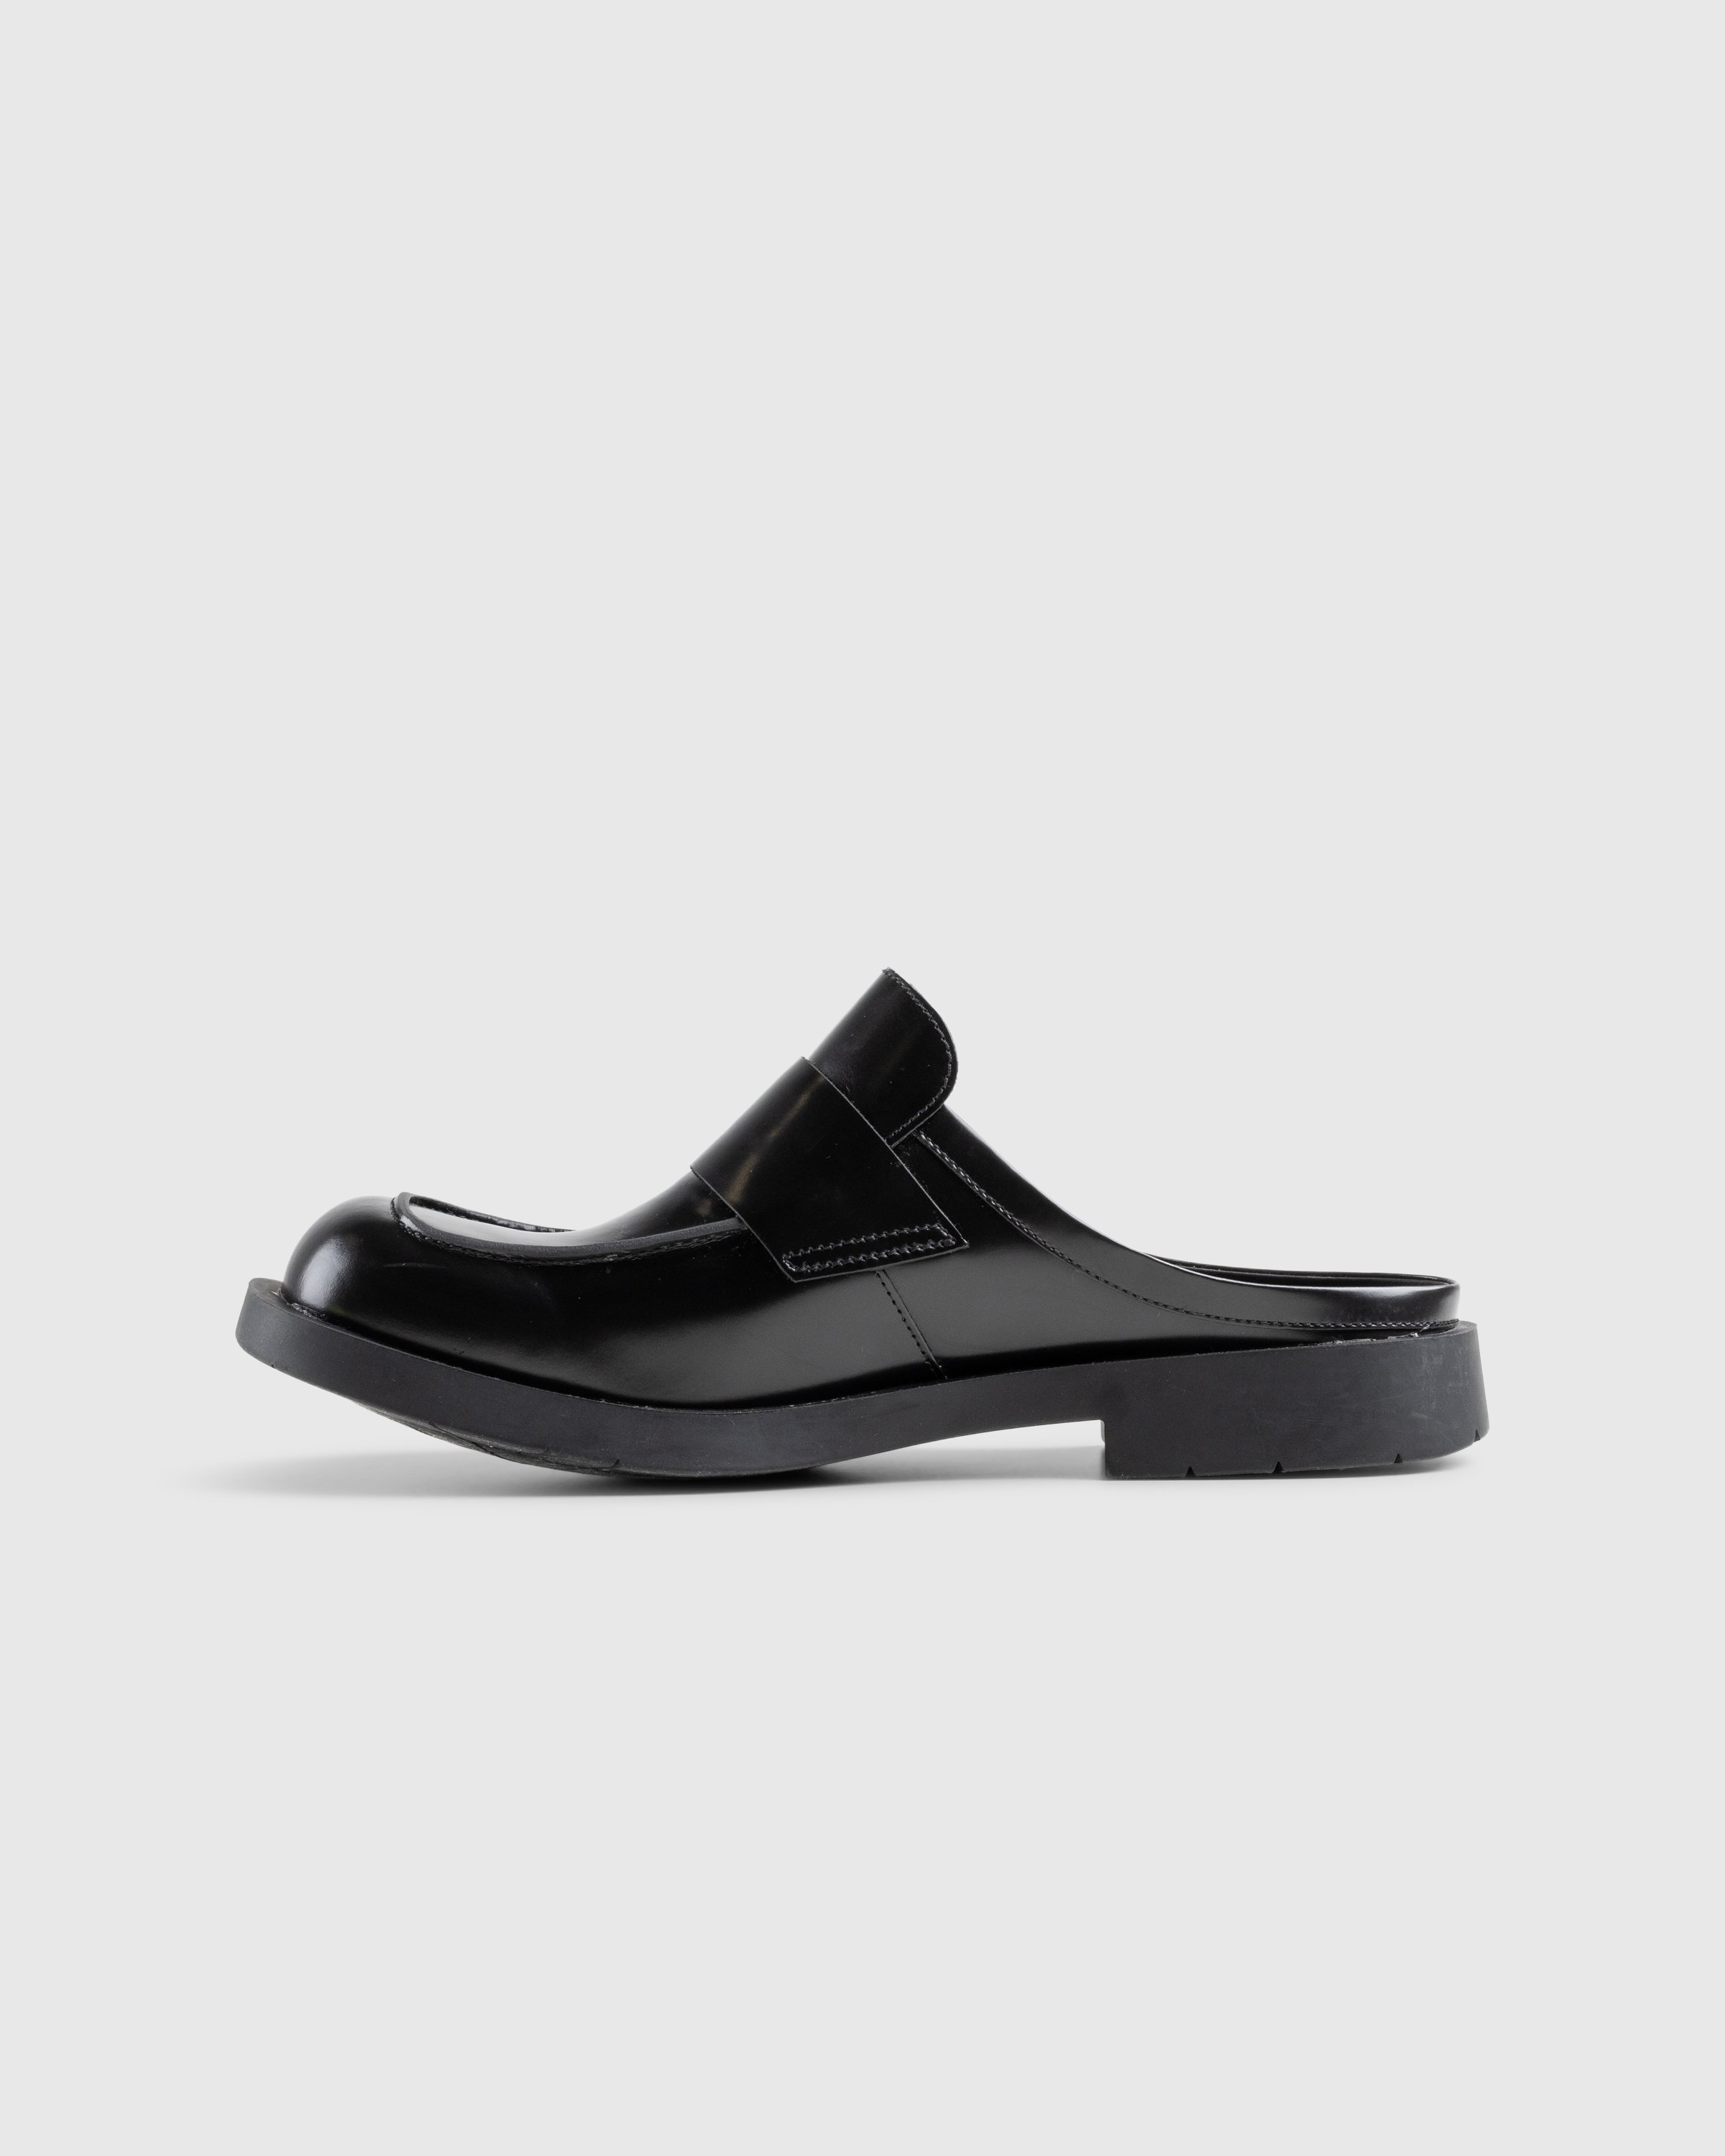 CAMPERLAB - 1978 - Footwear - Black - Image 2